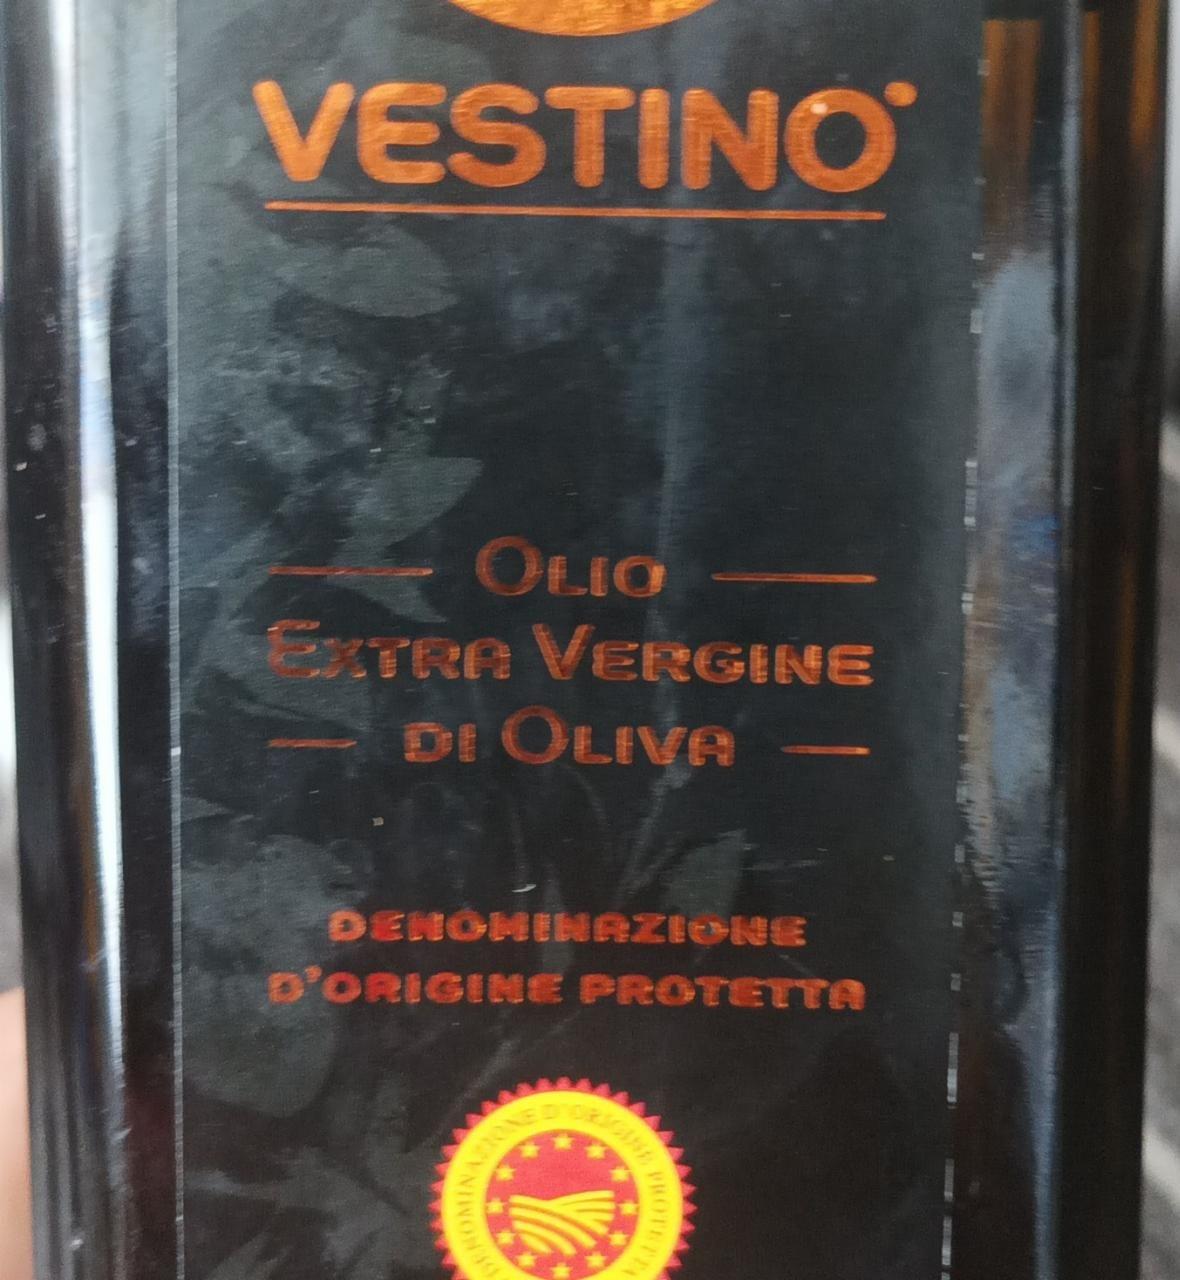 Fotografie - Olio extra vergine di oliva Vestino